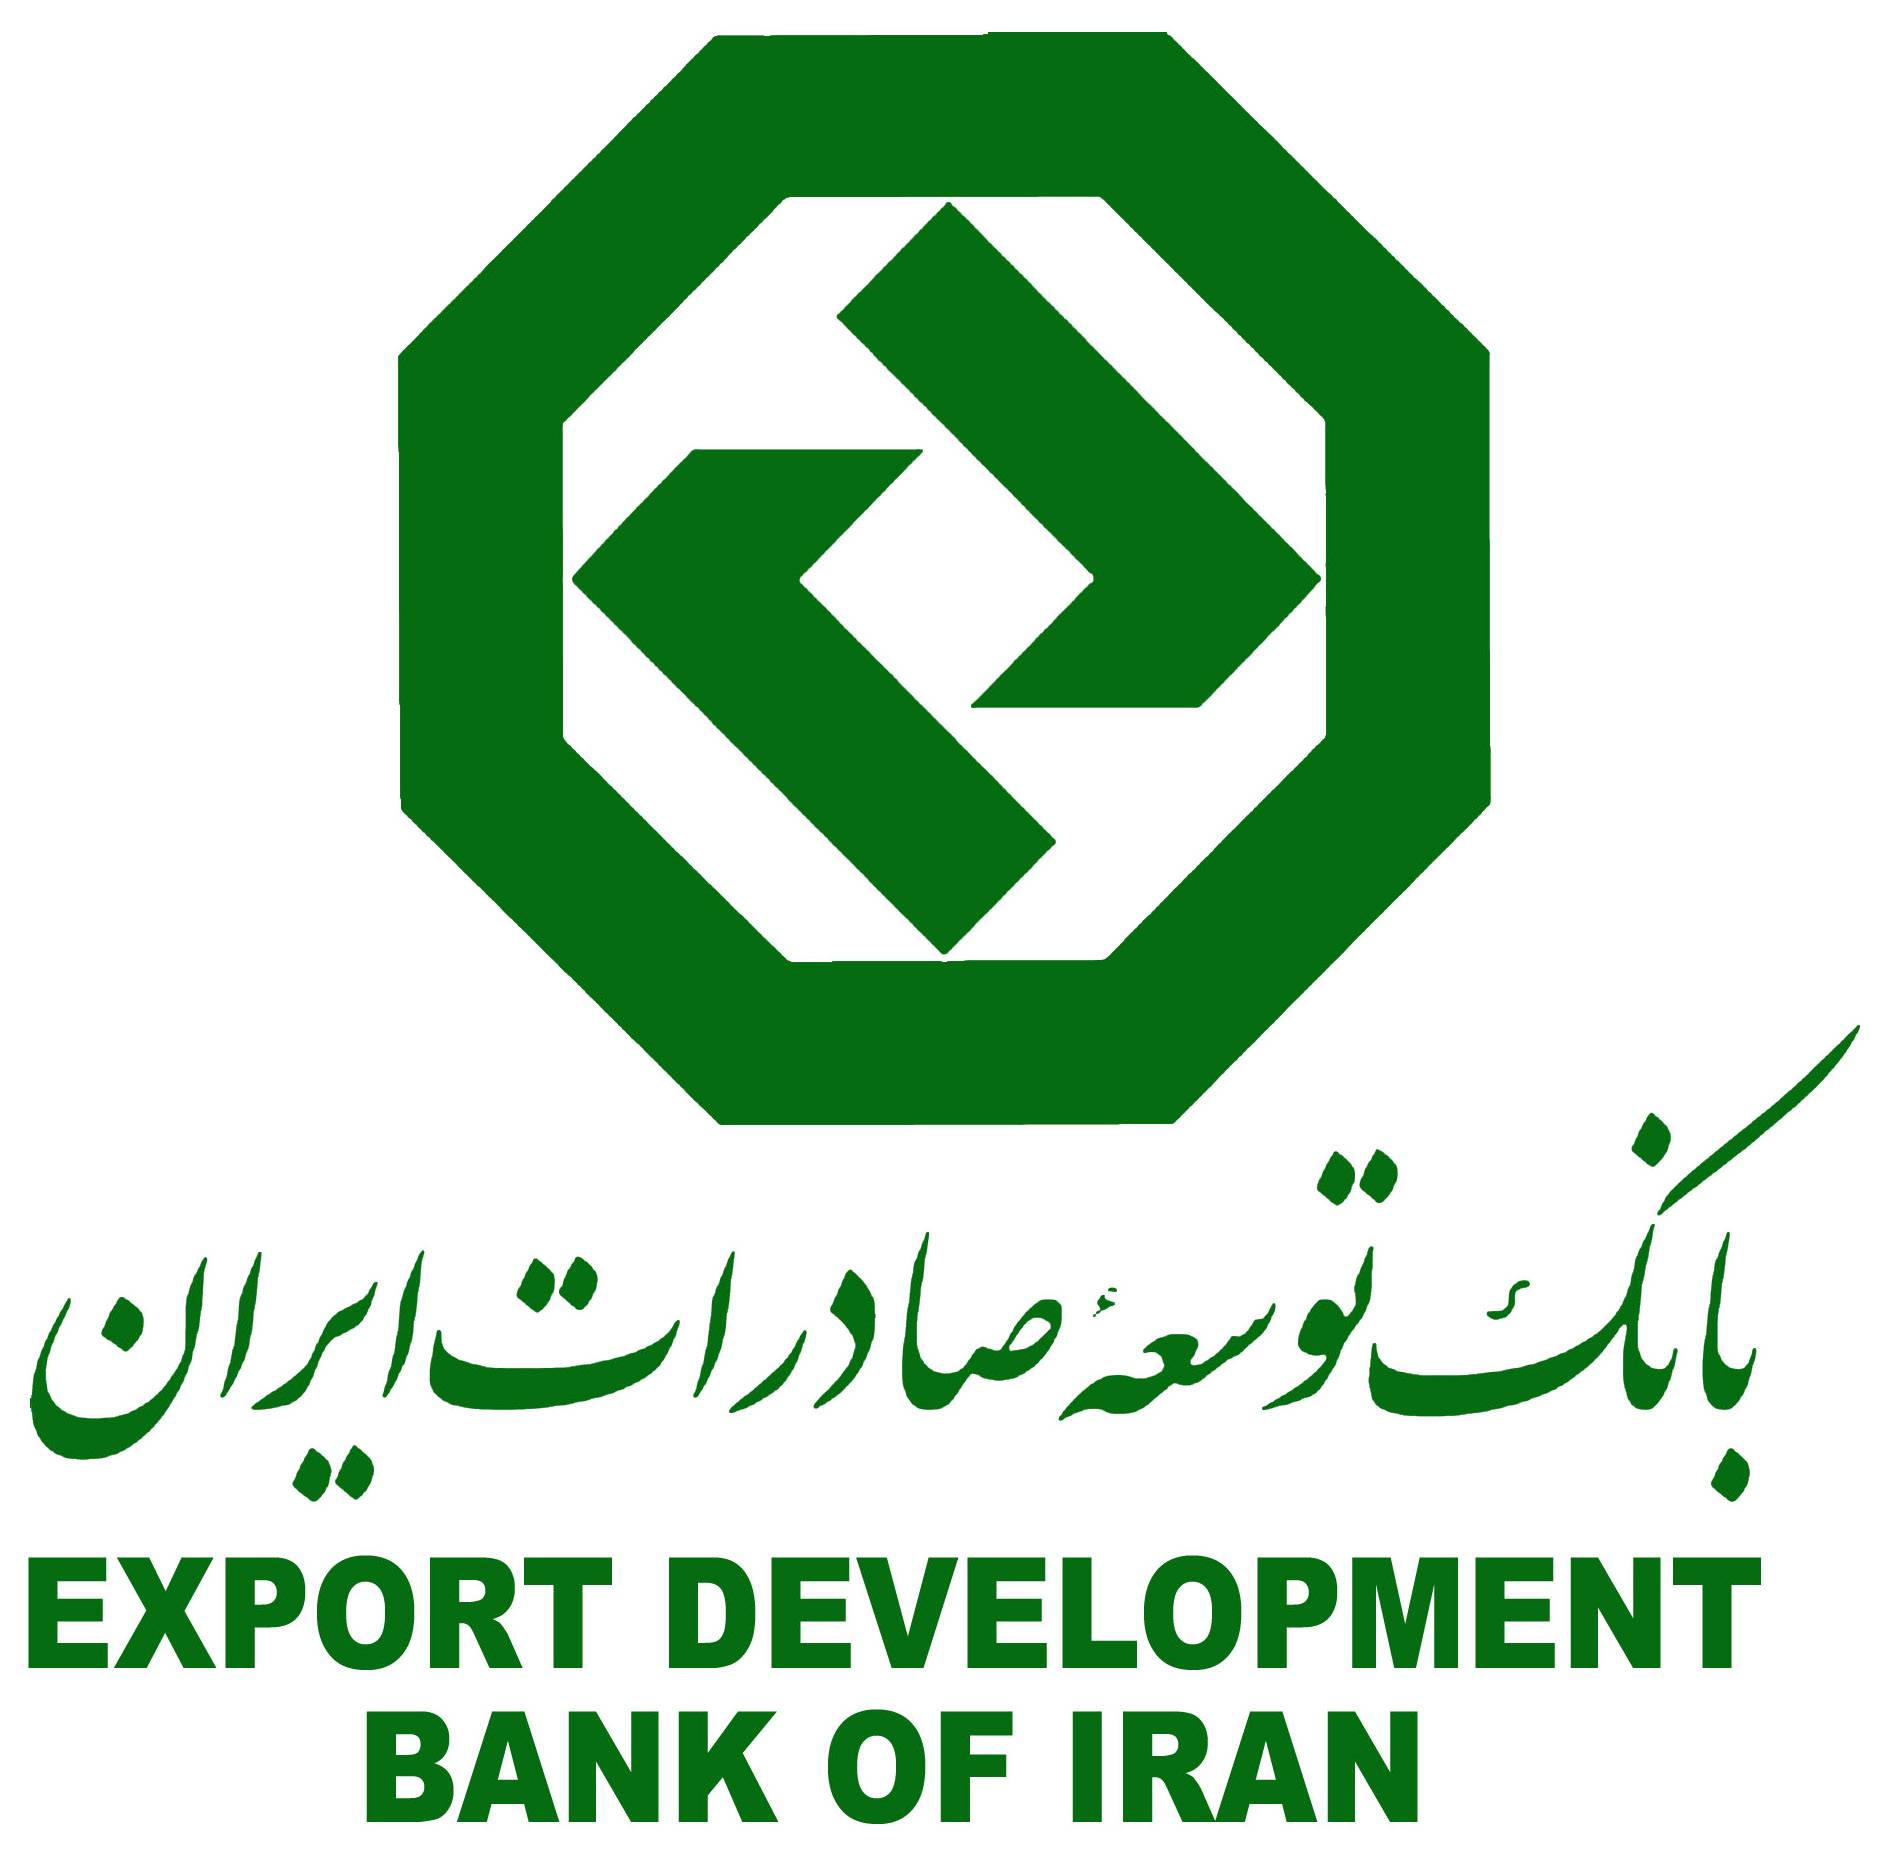 مدیرعامل بانک توسعه صادرات ایران از اختصاص 4 هزار میلیارد ریال تسهیلات با یارانه 5 درصدی به واحدهای تولیدی و صنعتی خبر داد.